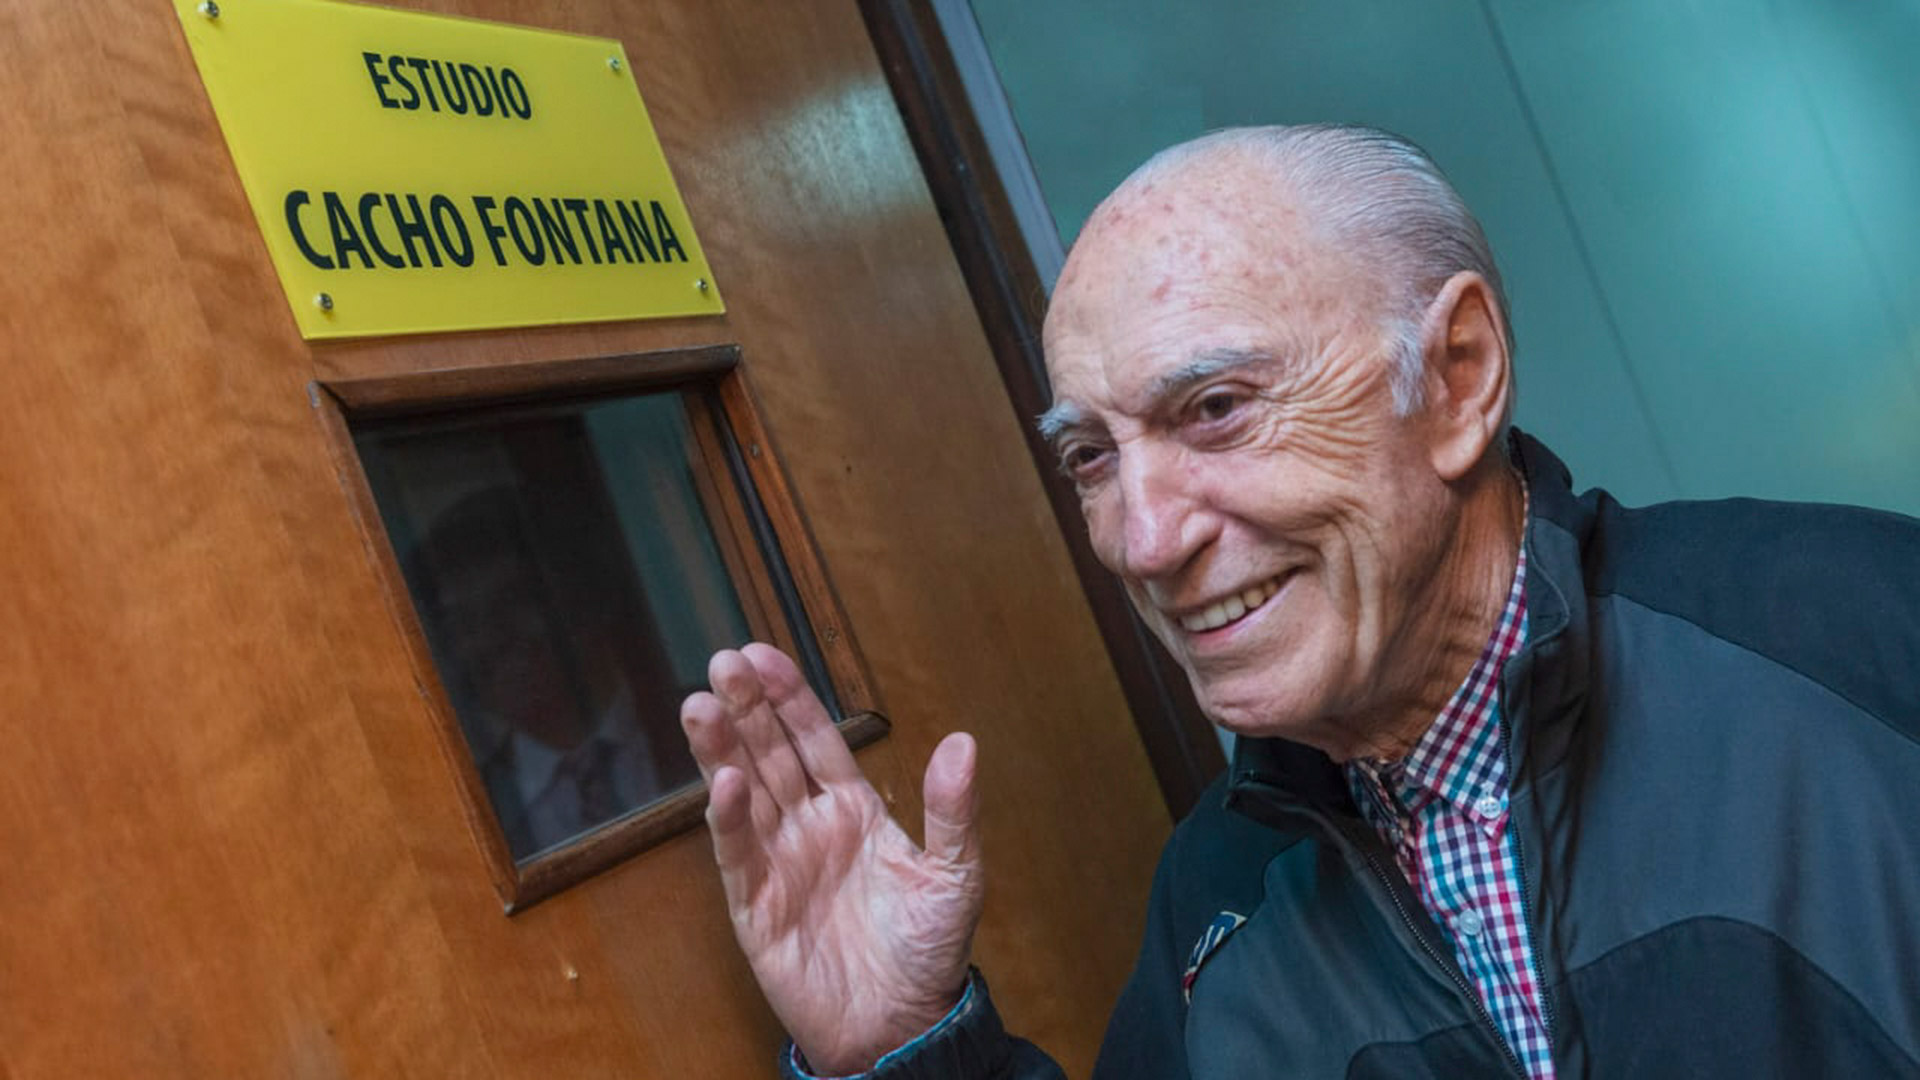 Cacho Fontana fue una de las máximas glorias de la radiofonía argentina